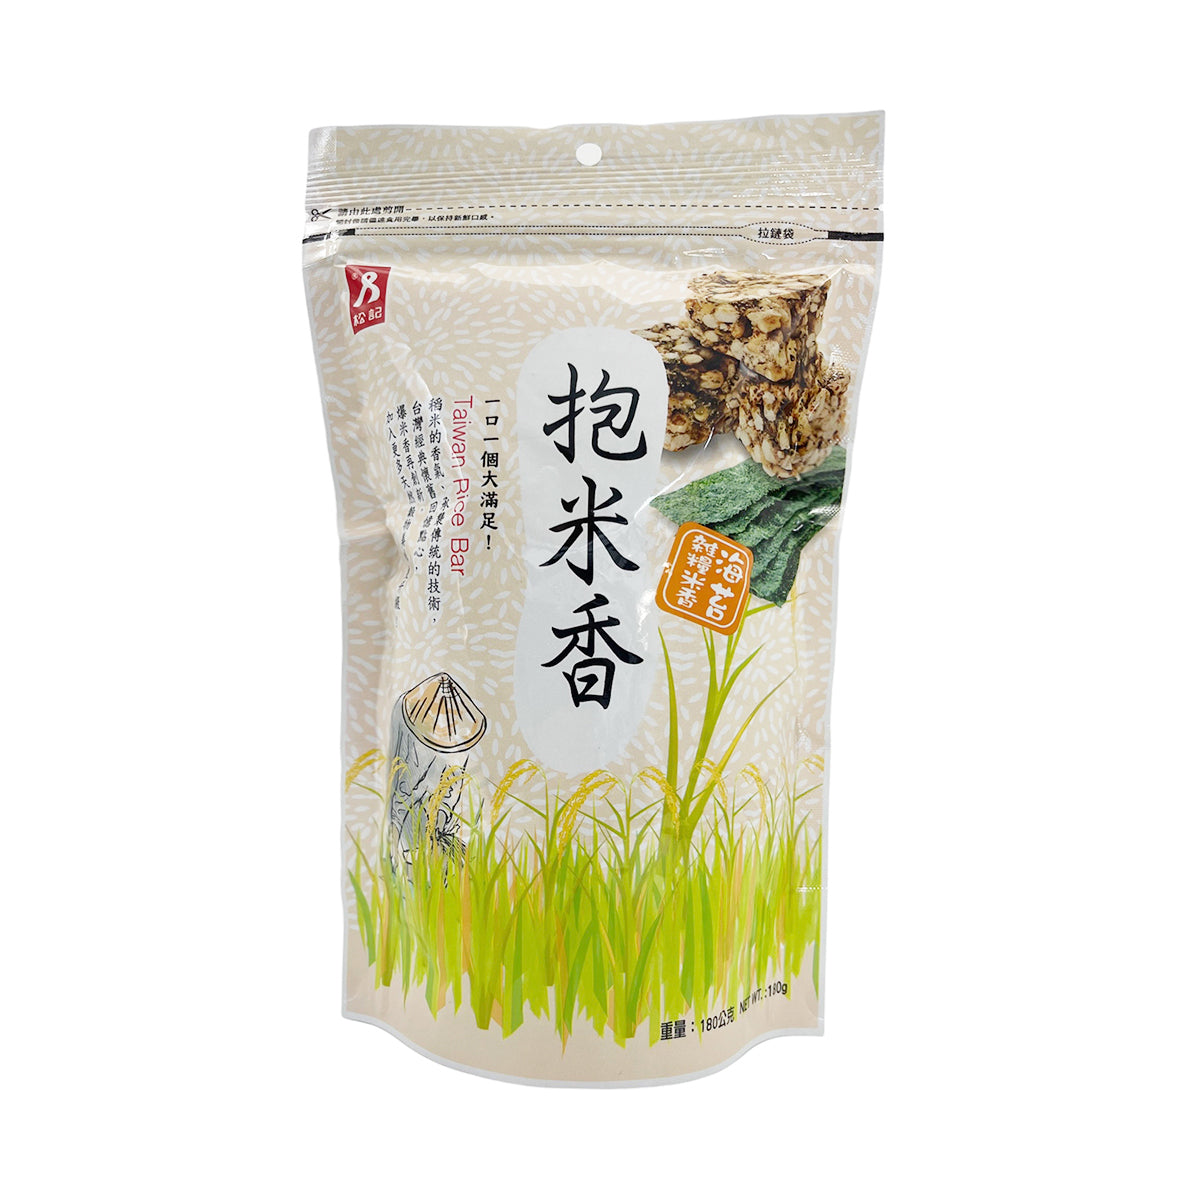 【SUNG CHI】Natural Roasted Rice Bar (Seaweed) 200g